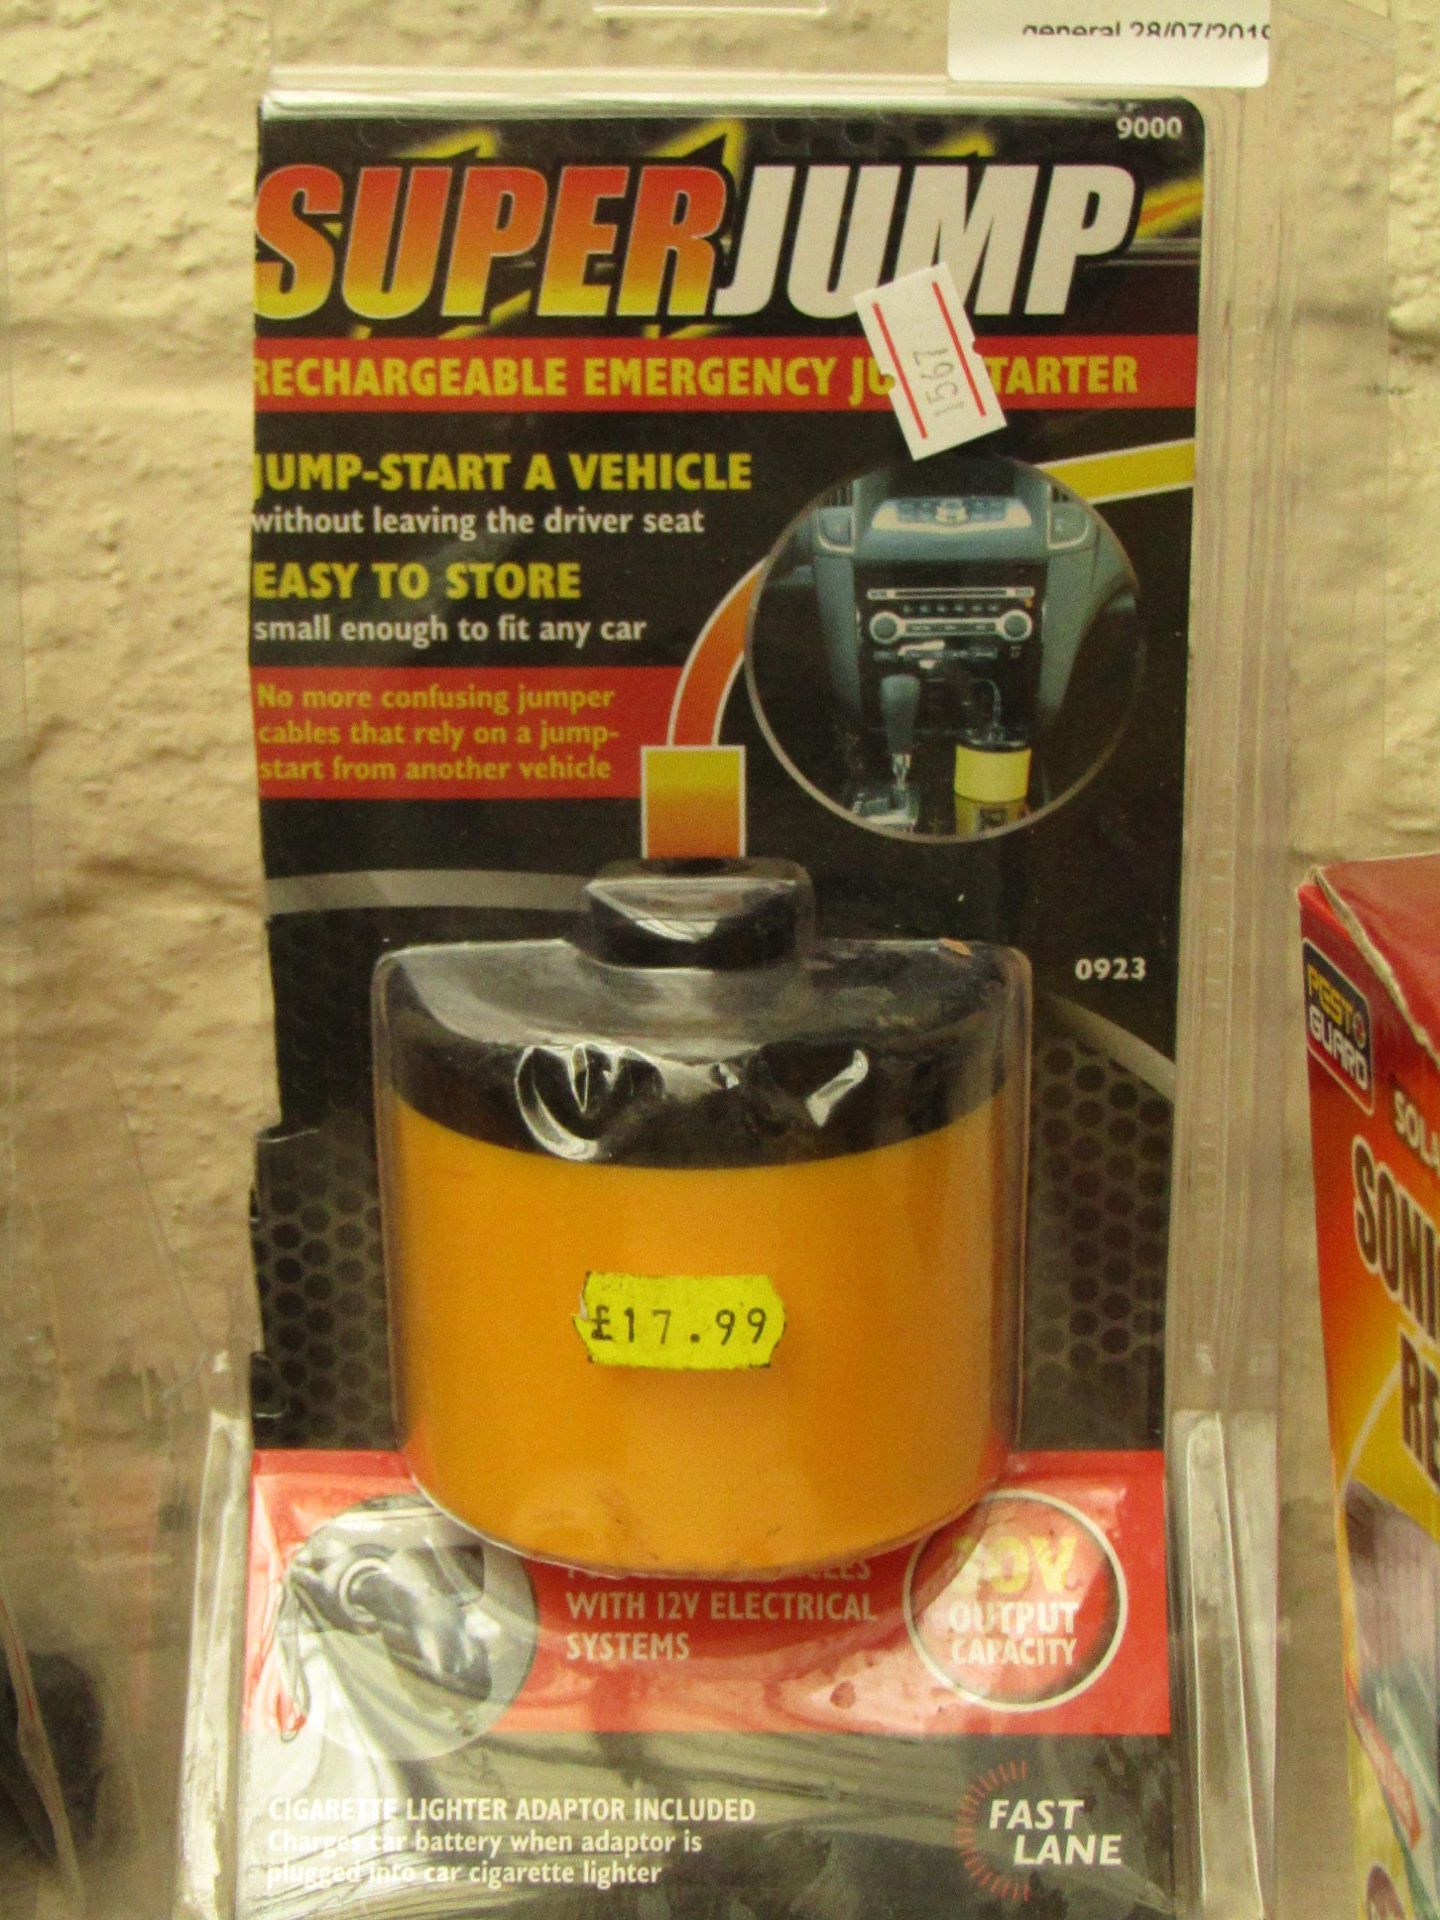 Super Jump rechargable Emergency Jump starter, can jump start a car through the cigarette lighter,